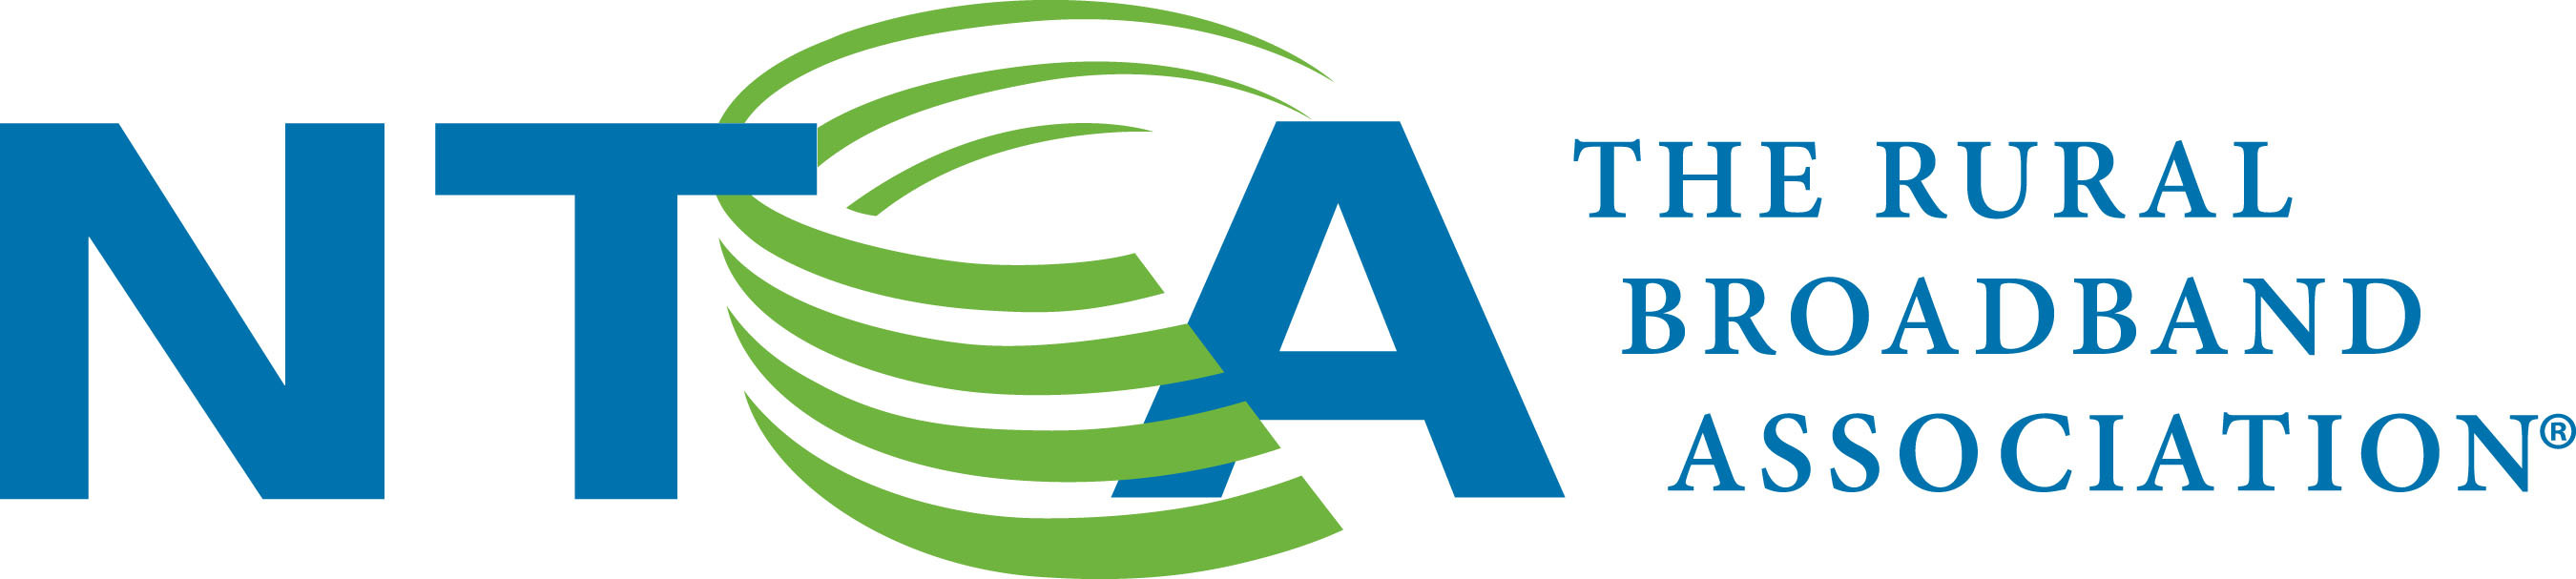 NTCA Logo. (PRNewsFoto/NTCA-The Rural Broadband Association) (PRNewsFoto/NTCA-THE RURAL BROADBAND ASSN)